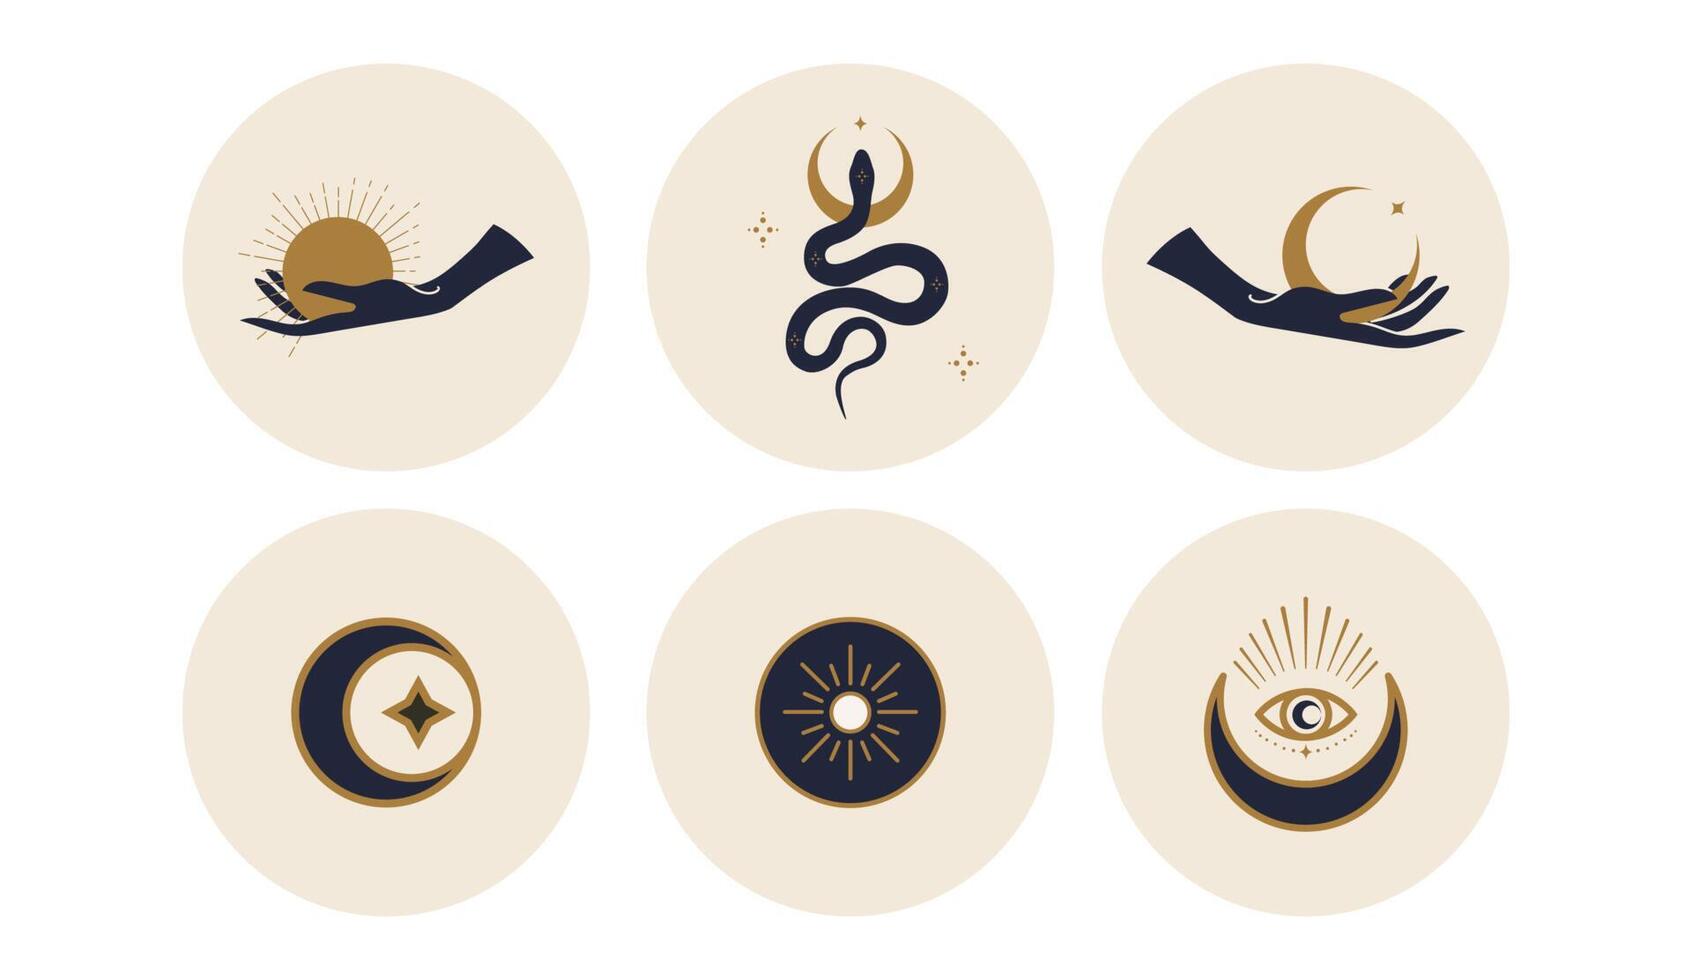 heilige iconen die de maan, de zon en slangen in cirkels afschilderen. vectorillustratie. set pictogrammen en emblemen voor nieuwsomslagen op sociale media. ontwerpsjablonen voor een yogastudio en een astroloogblogger vector